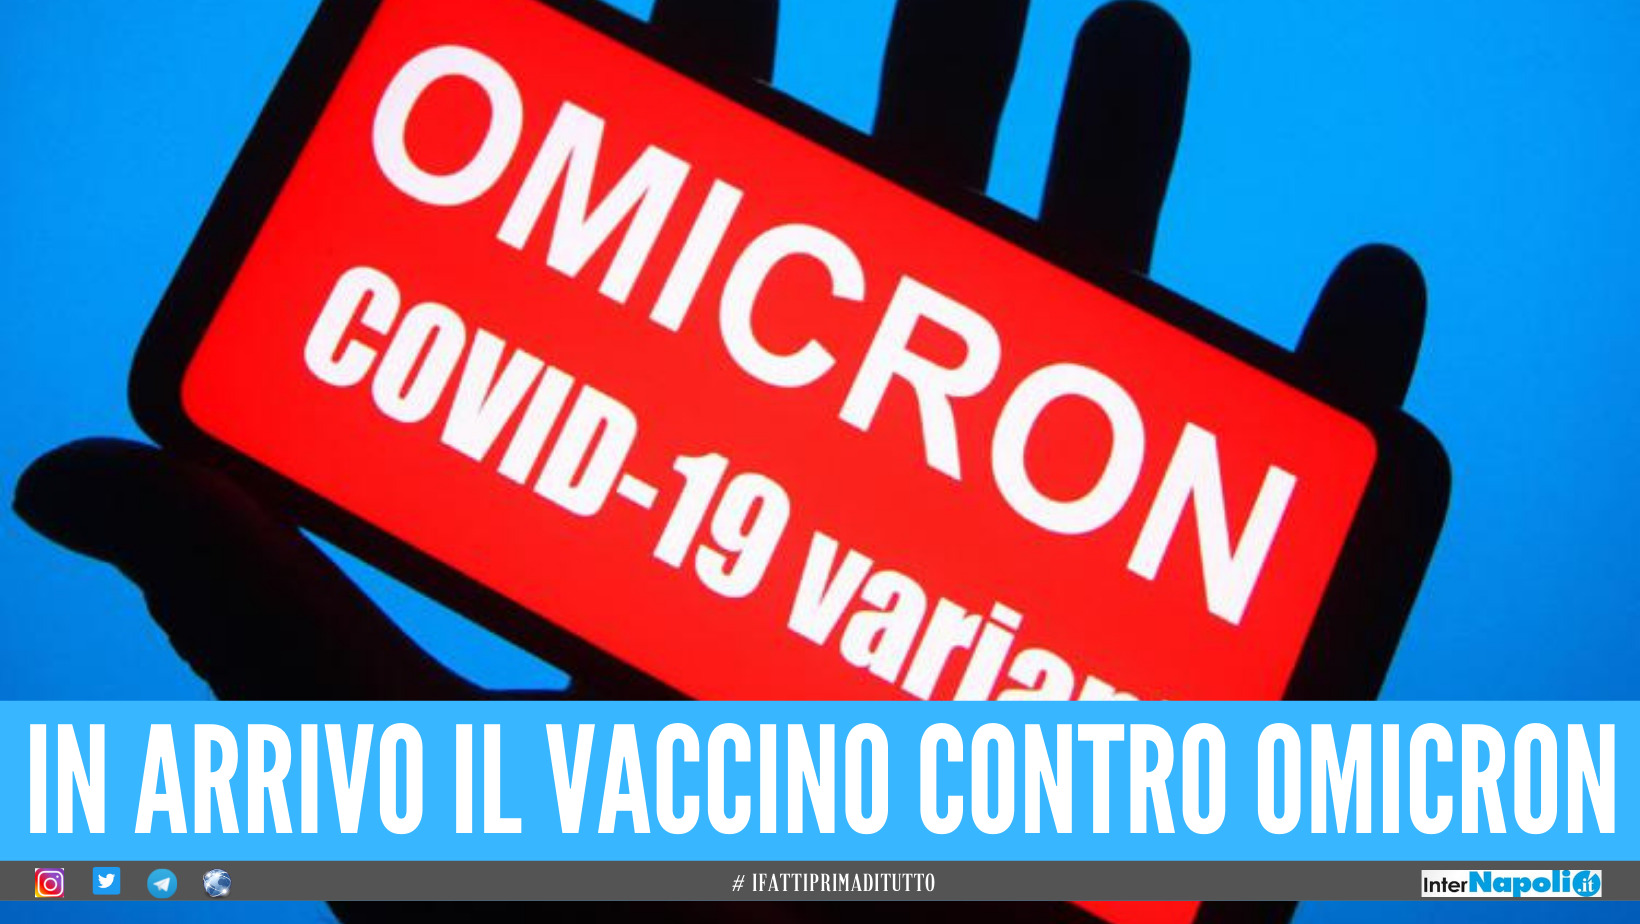 Entro 2 mesi mezza Europa sarà contagiata da Omicron, ma Pfizer annuncia l'arrivo del vaccino solo per marzo